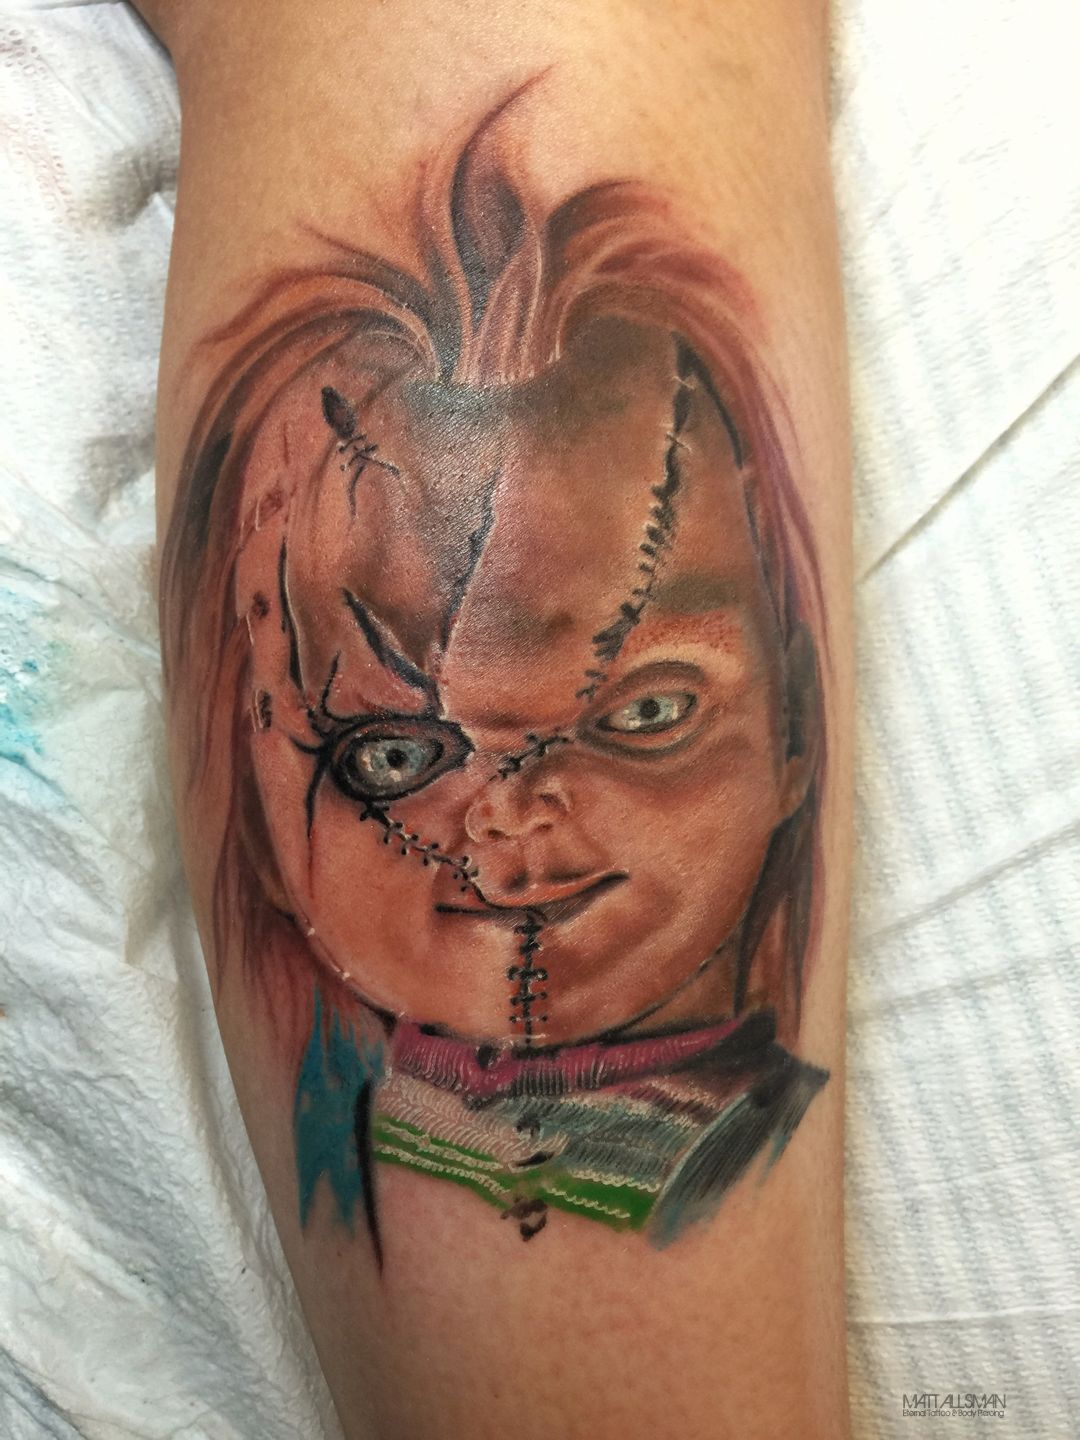 Chucky the Killer Tattoos  BlendUp